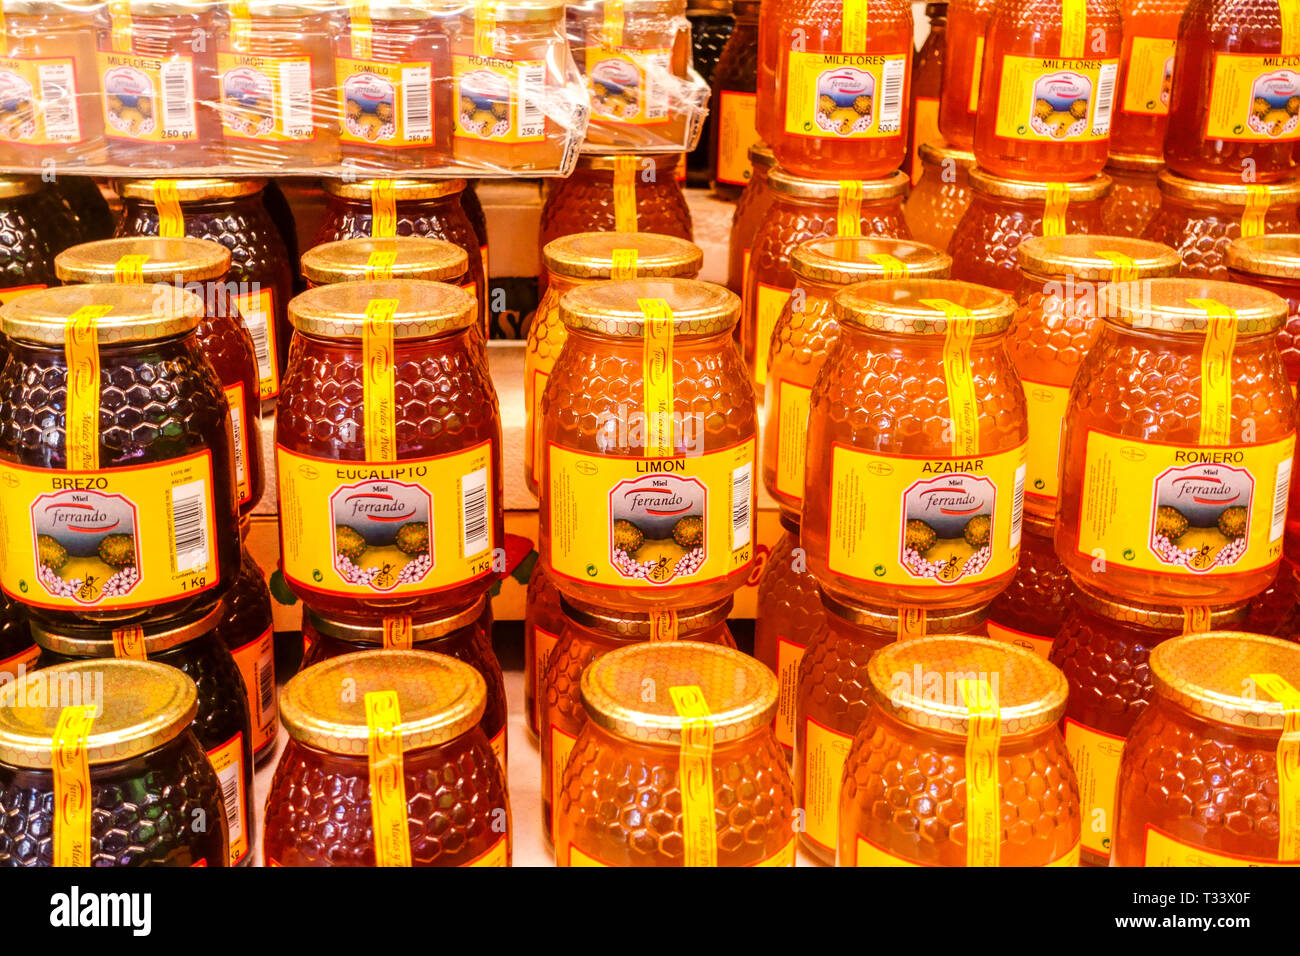 Product of Valencia, Spanish honey in jars, Spain miel Stock Photo